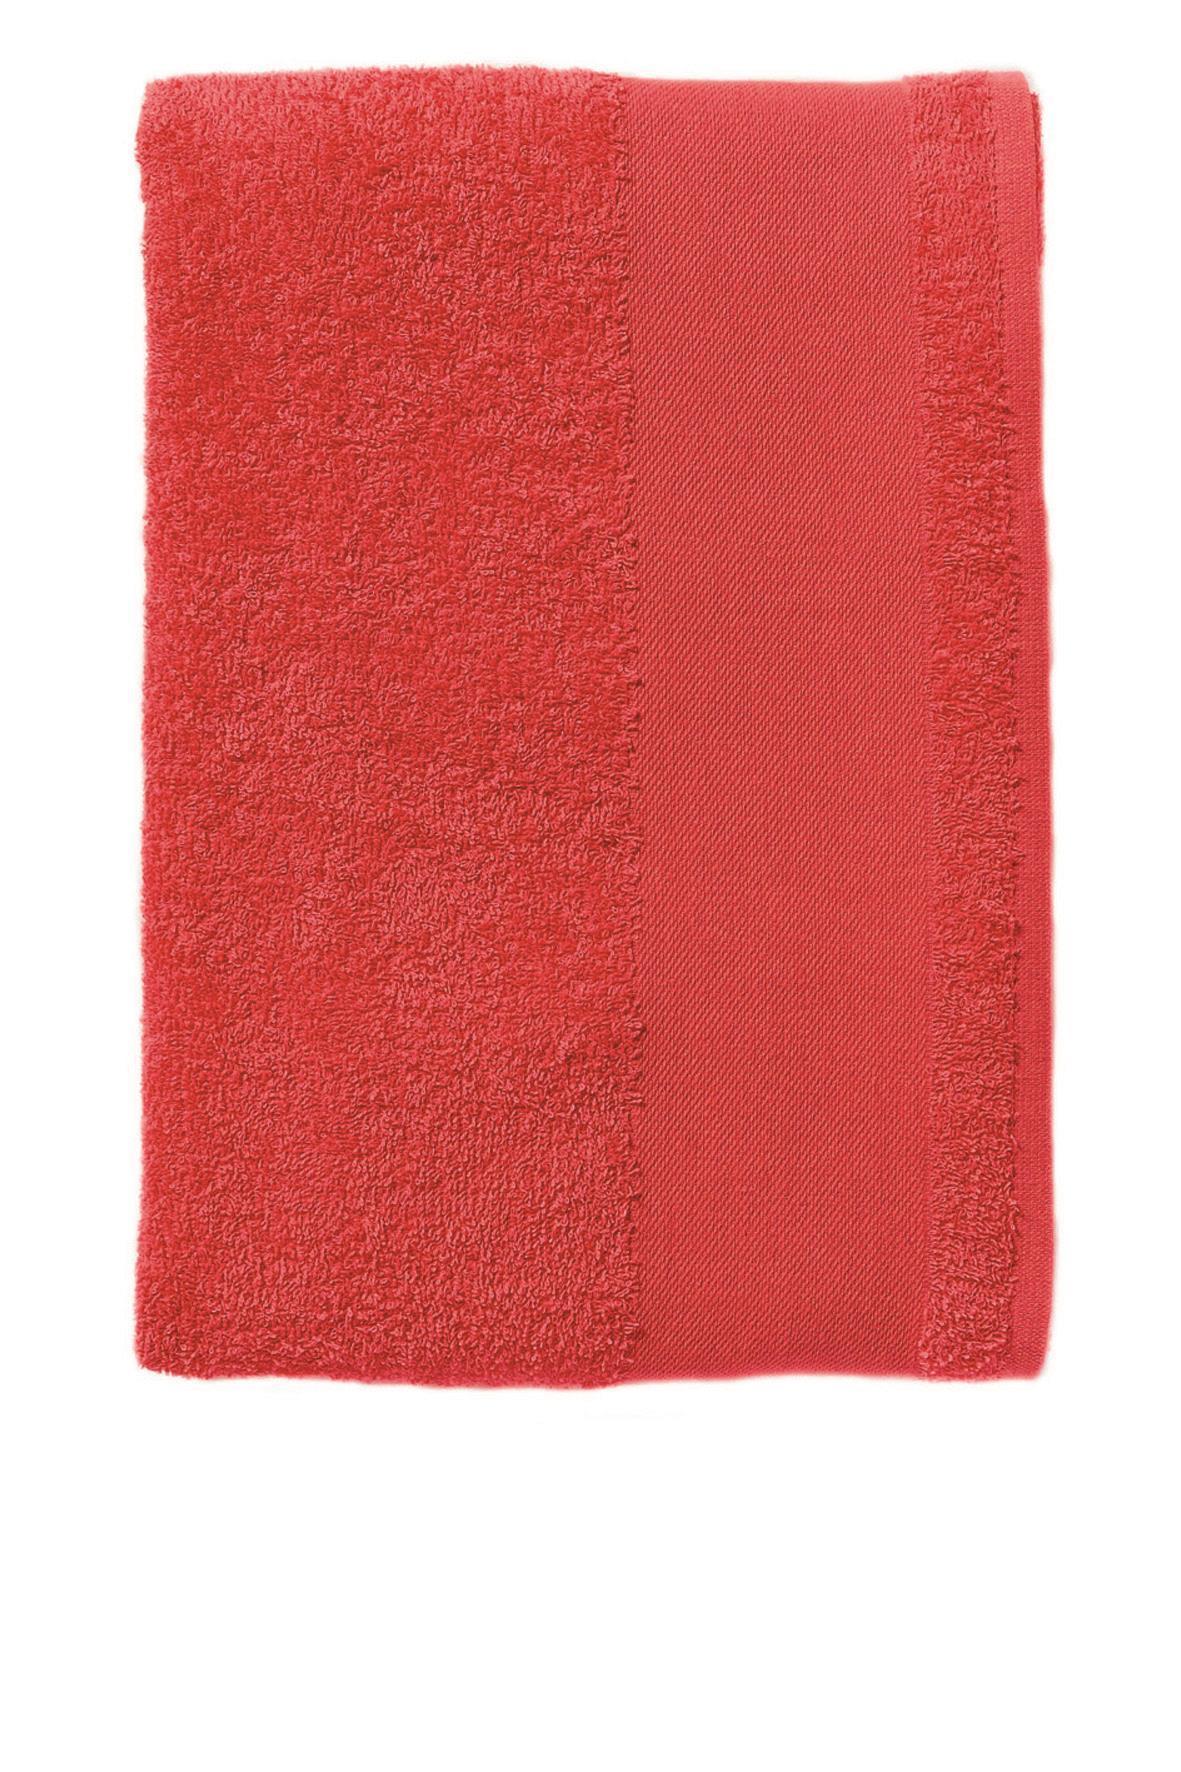 Handoeken rood handdoek diverse maten strandlaken.